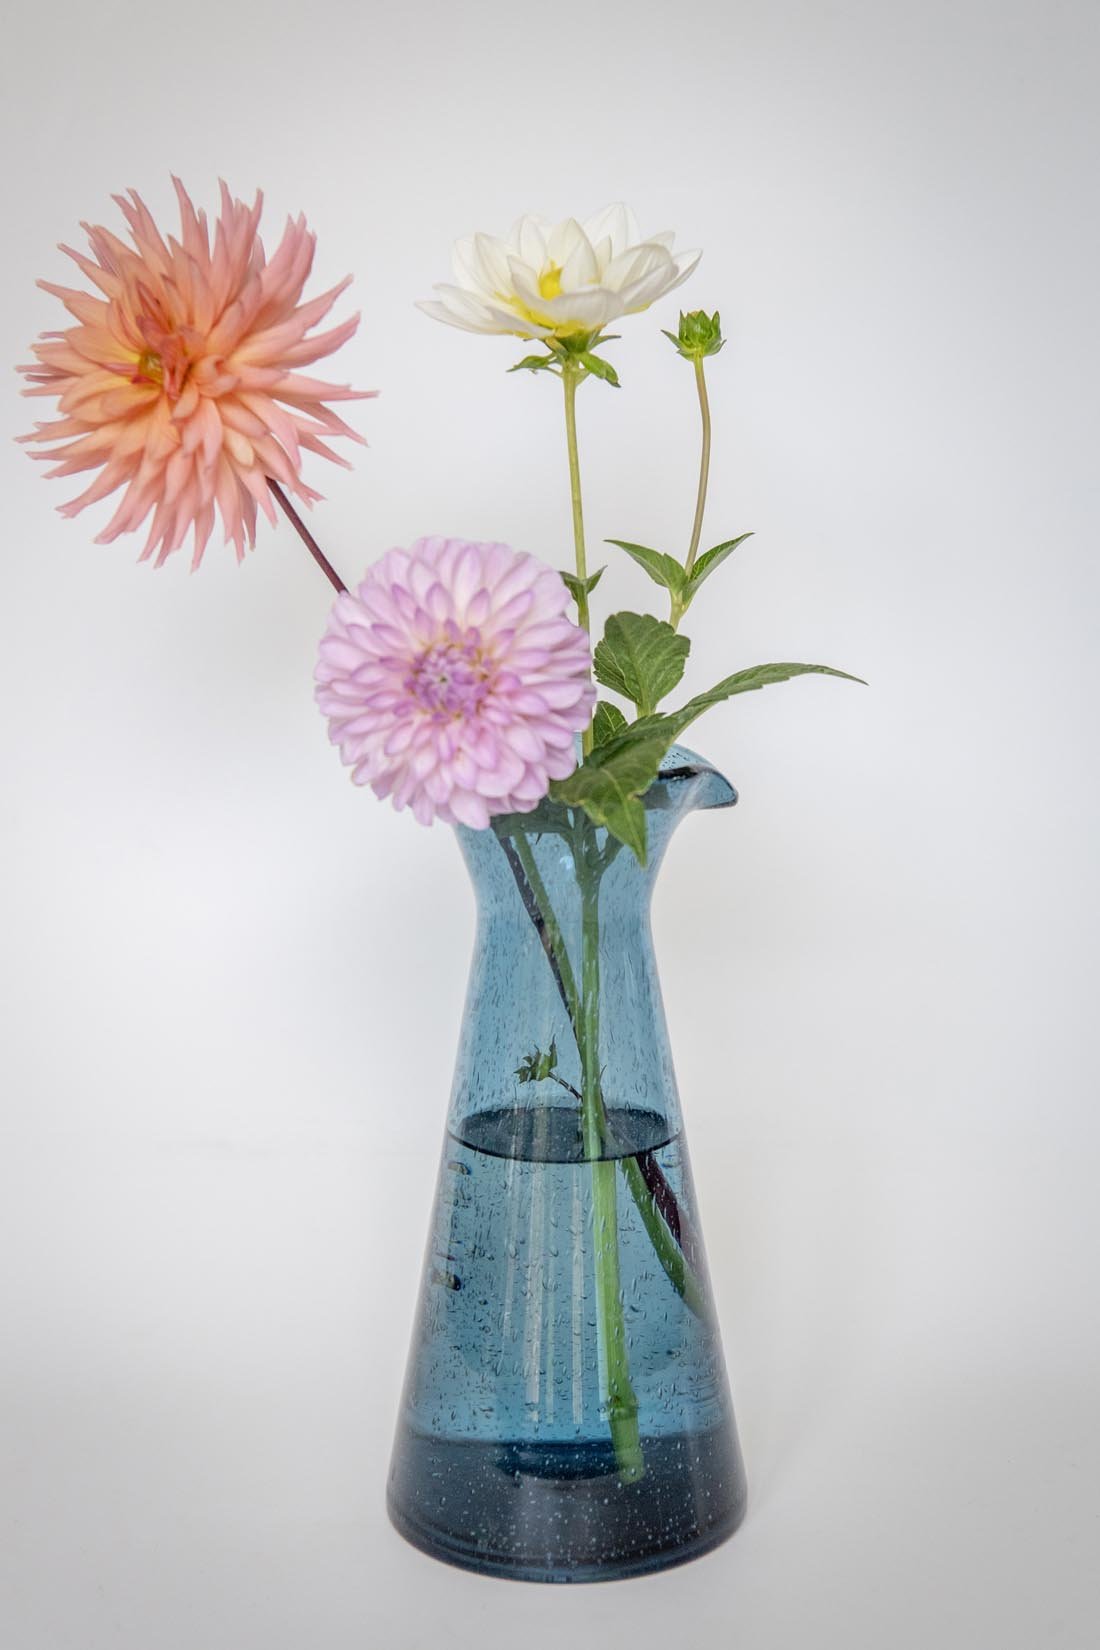 Glass pitcher Atlantic blue - Natalia Willmott